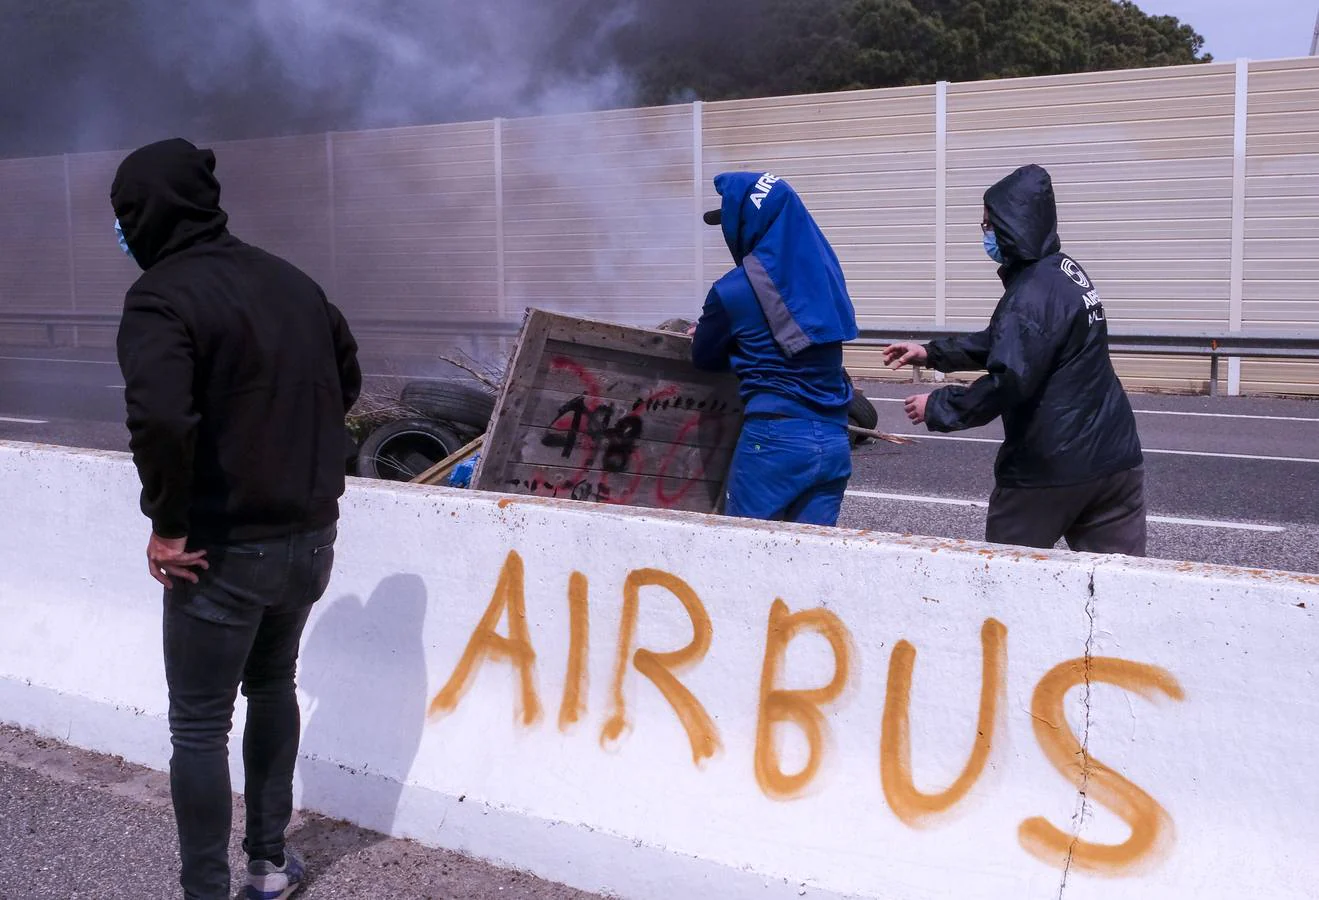 Las imágenes de la protesta de los trabajadores de Airbus en el puente y el fuego provocado en el Pinar